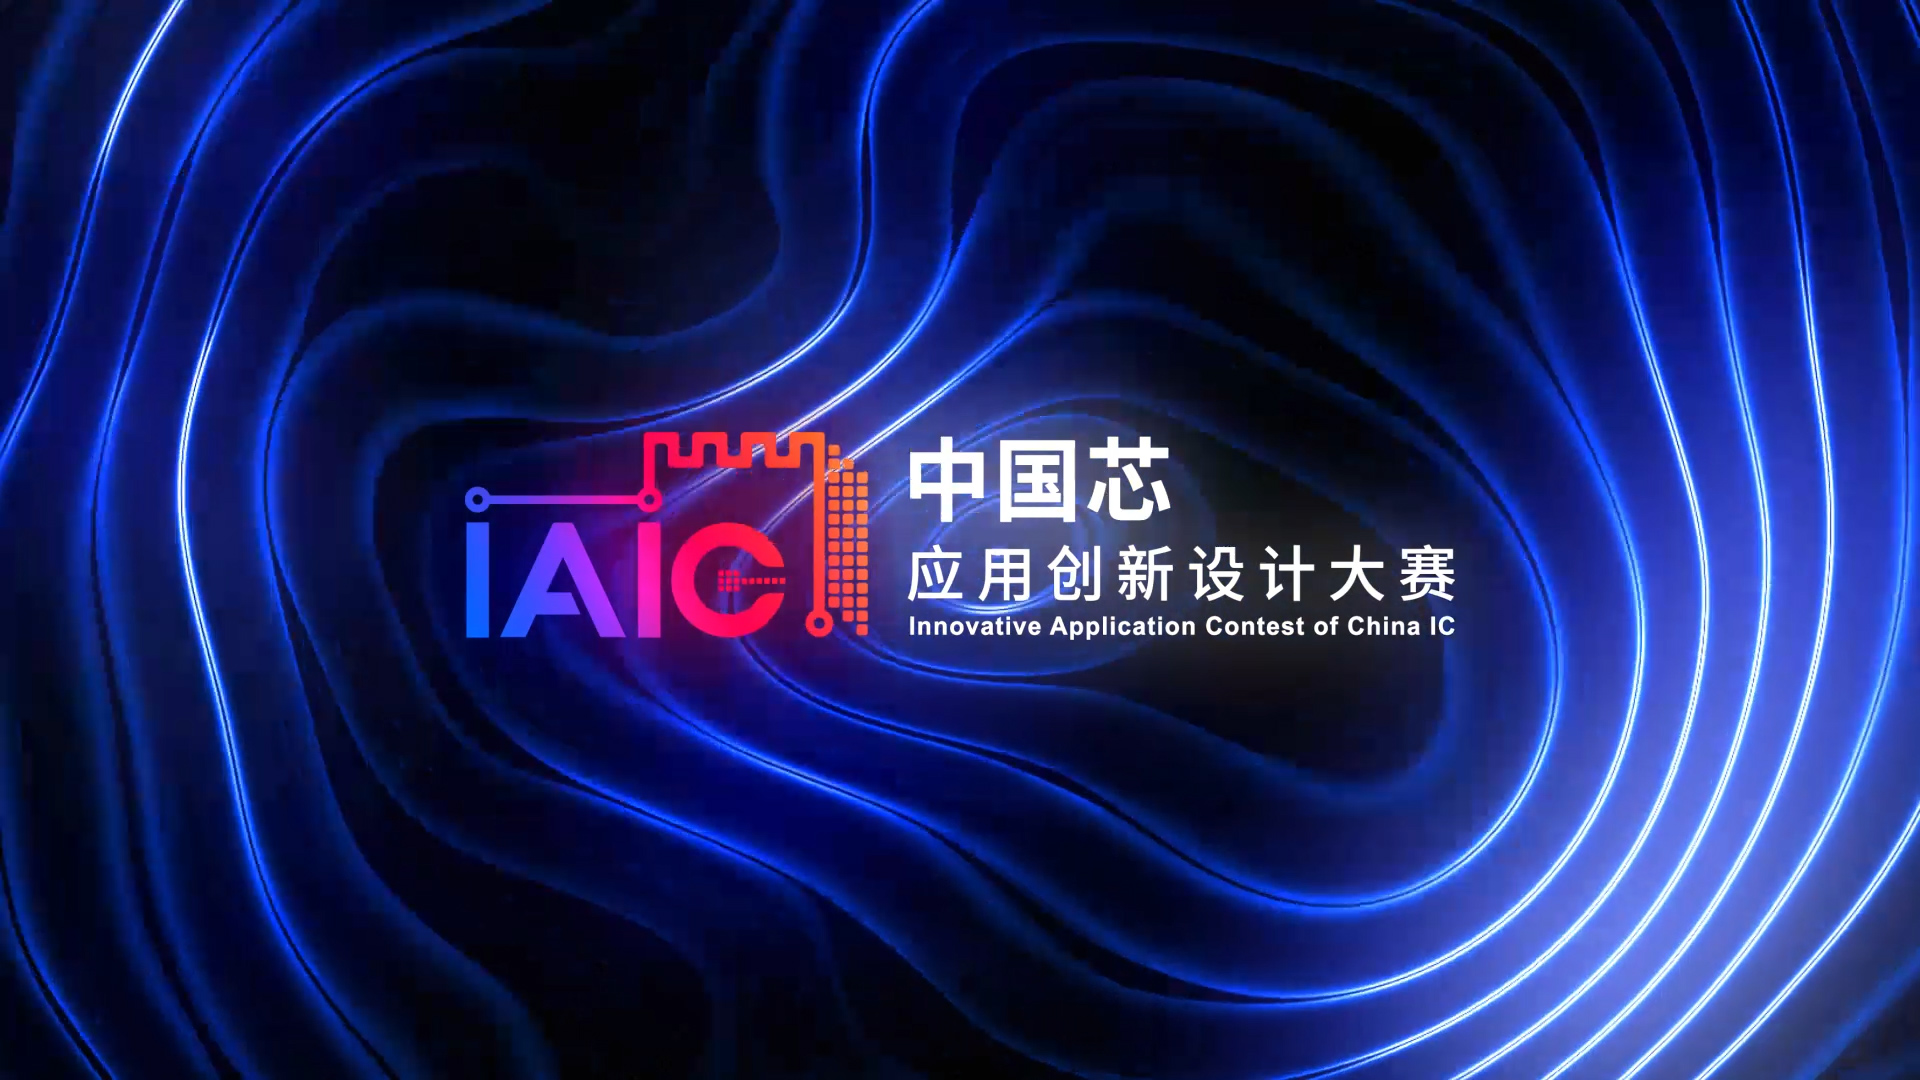 来报名吧，让IAIC大赛为您采用中国芯的创新项目赋能！